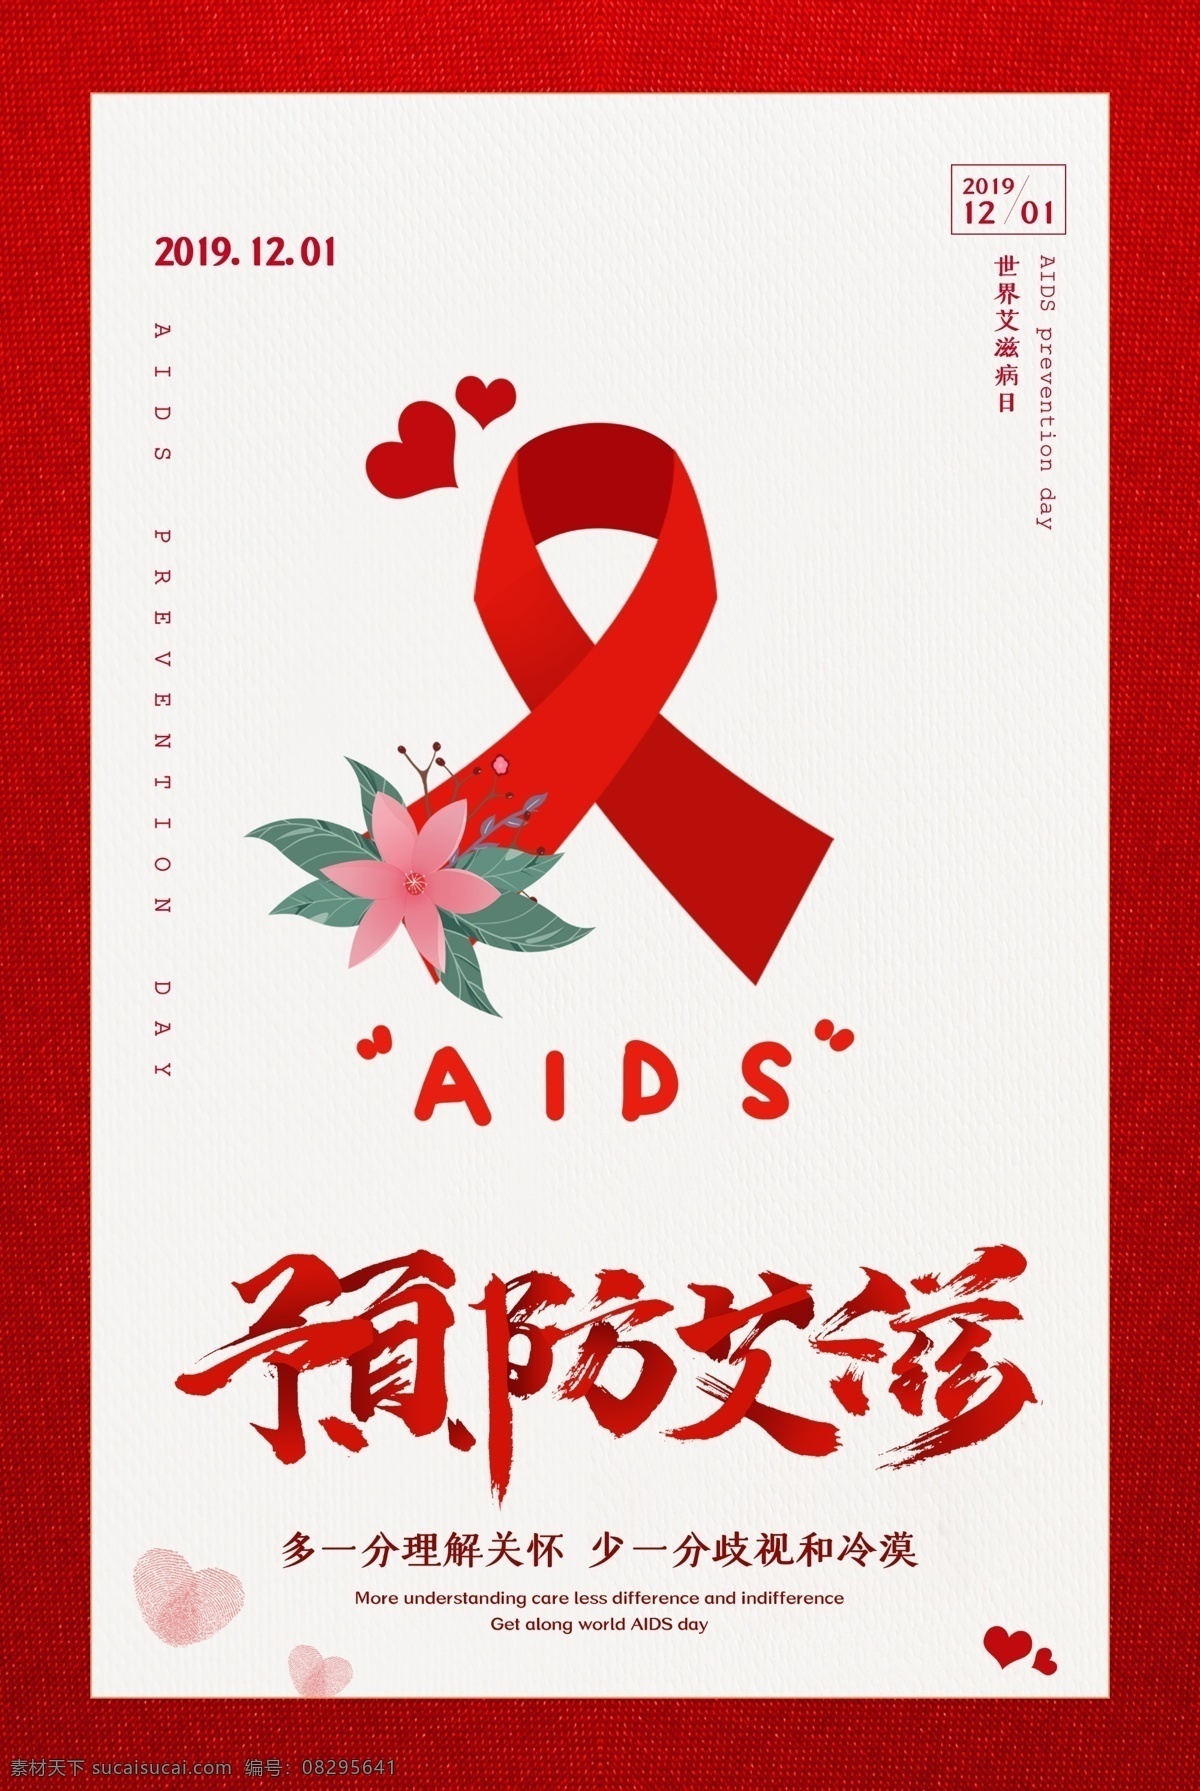 艾滋病海报 艾滋病宣传 艾滋病展板 艾滋病广告 艾滋病标语 艾滋病口号 艾滋病策划 艾滋病日 艾滋病日海报 艾滋病日宣传 艾滋病日展板 艾滋病日广告 艾滋病日标语 艾滋病日口号 艾滋病宣传栏 世界艾滋病日 红丝带 手拉手人群 手拉手剪影 健康牵系